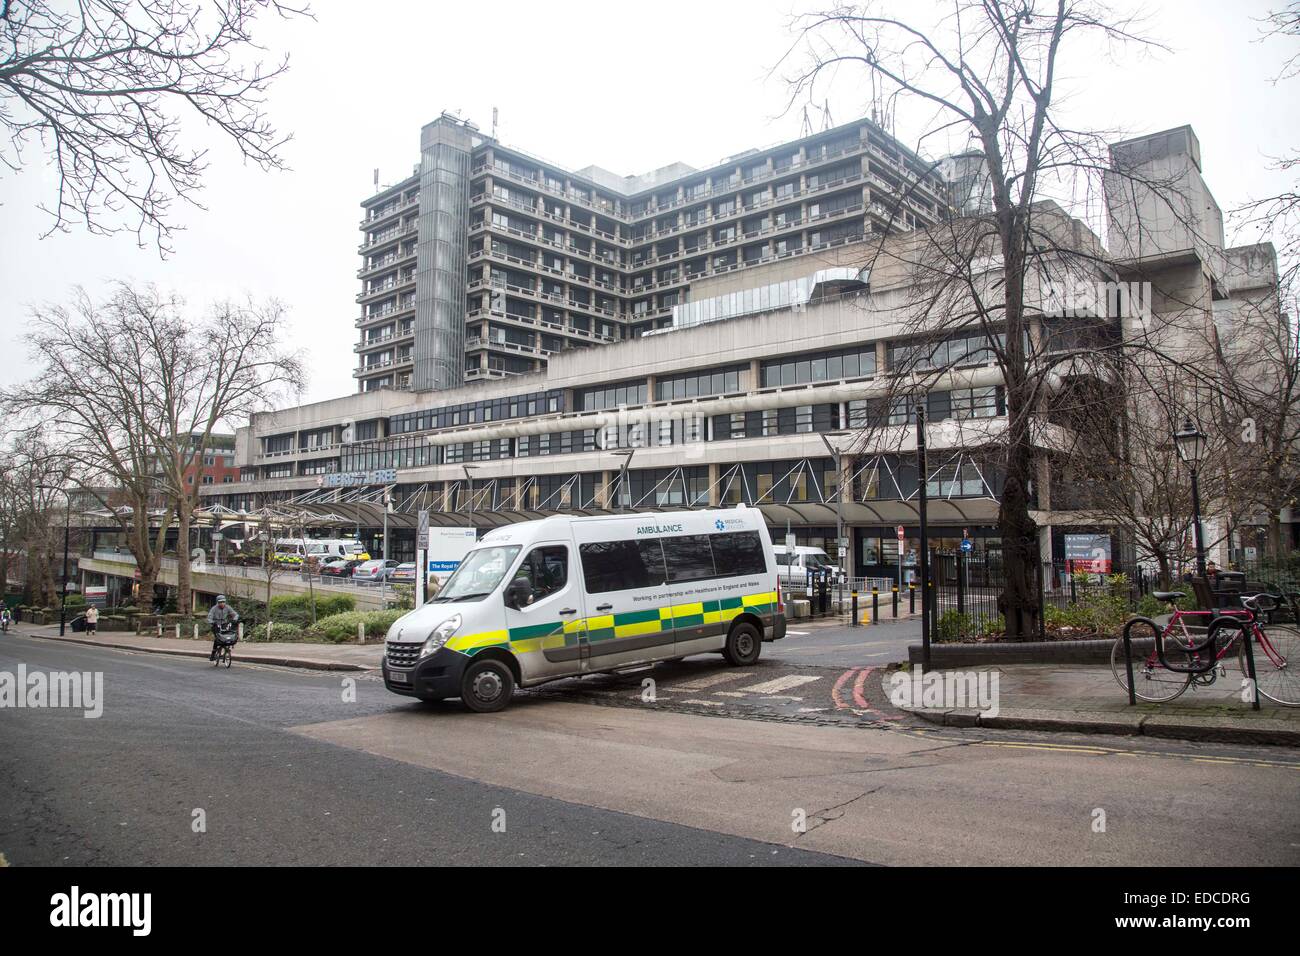 Royal Free Hospital London where the  Ebola isolation unit is housed Stock Photo